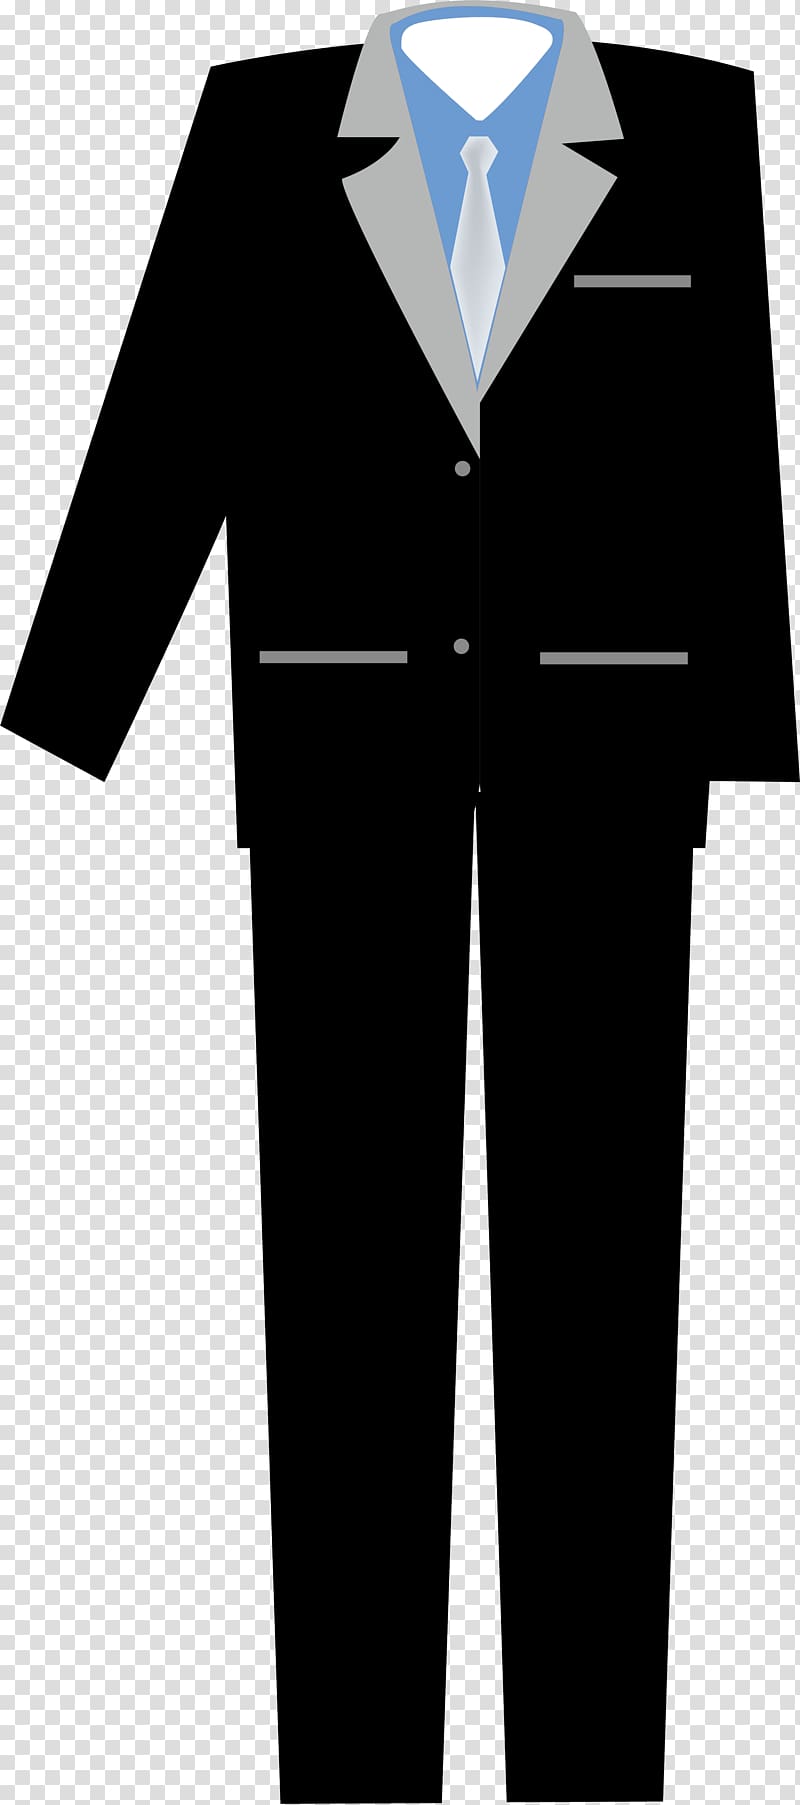 Robe Tuxedo Clothing Uniform Suit, Suit frock transparent background PNG clipart